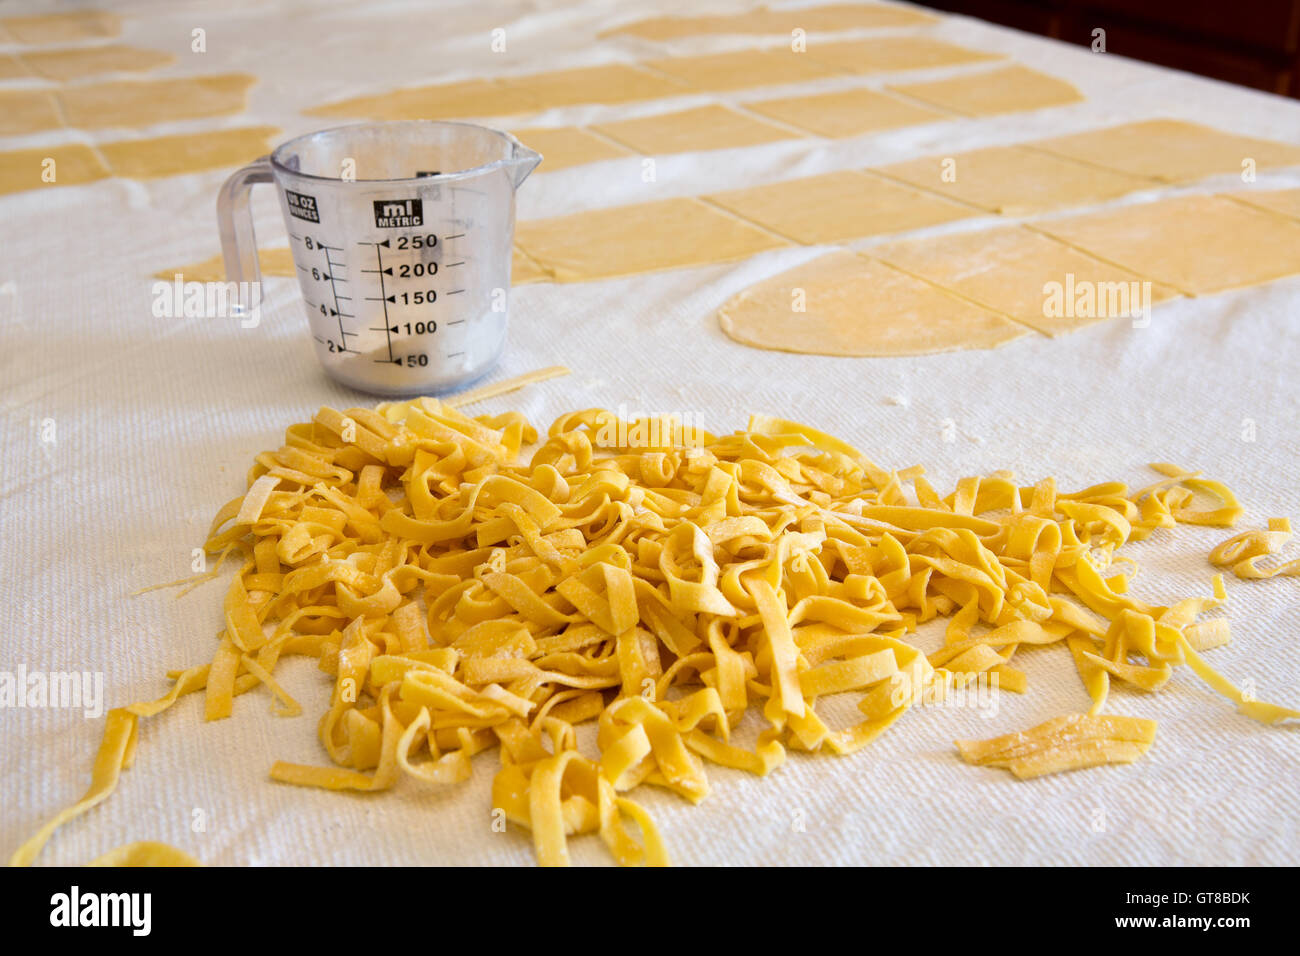 Haufen von frischen hausgemachten Bandnudeln Nudeln zubereitet mit Grieß und Hartweizen Weizen-Teig auf einer Küchenarbeitsplatte mit Blättern von unbeschnittenen d Stockfoto